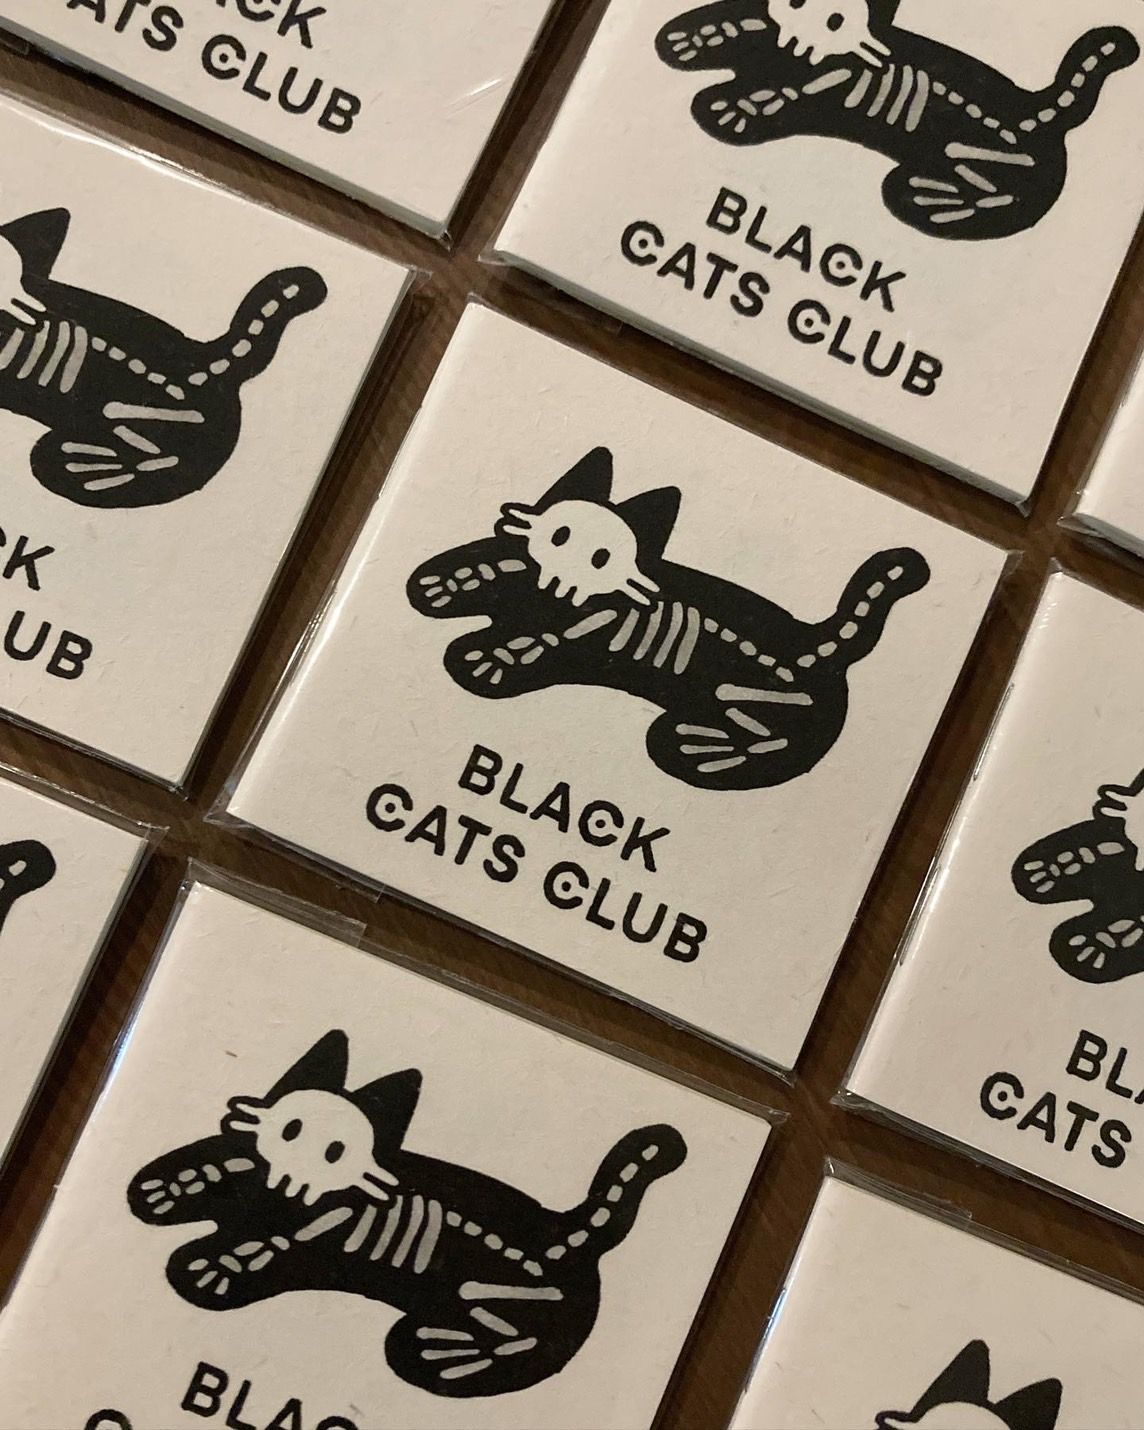 Black Cats Club 黑貓小冊